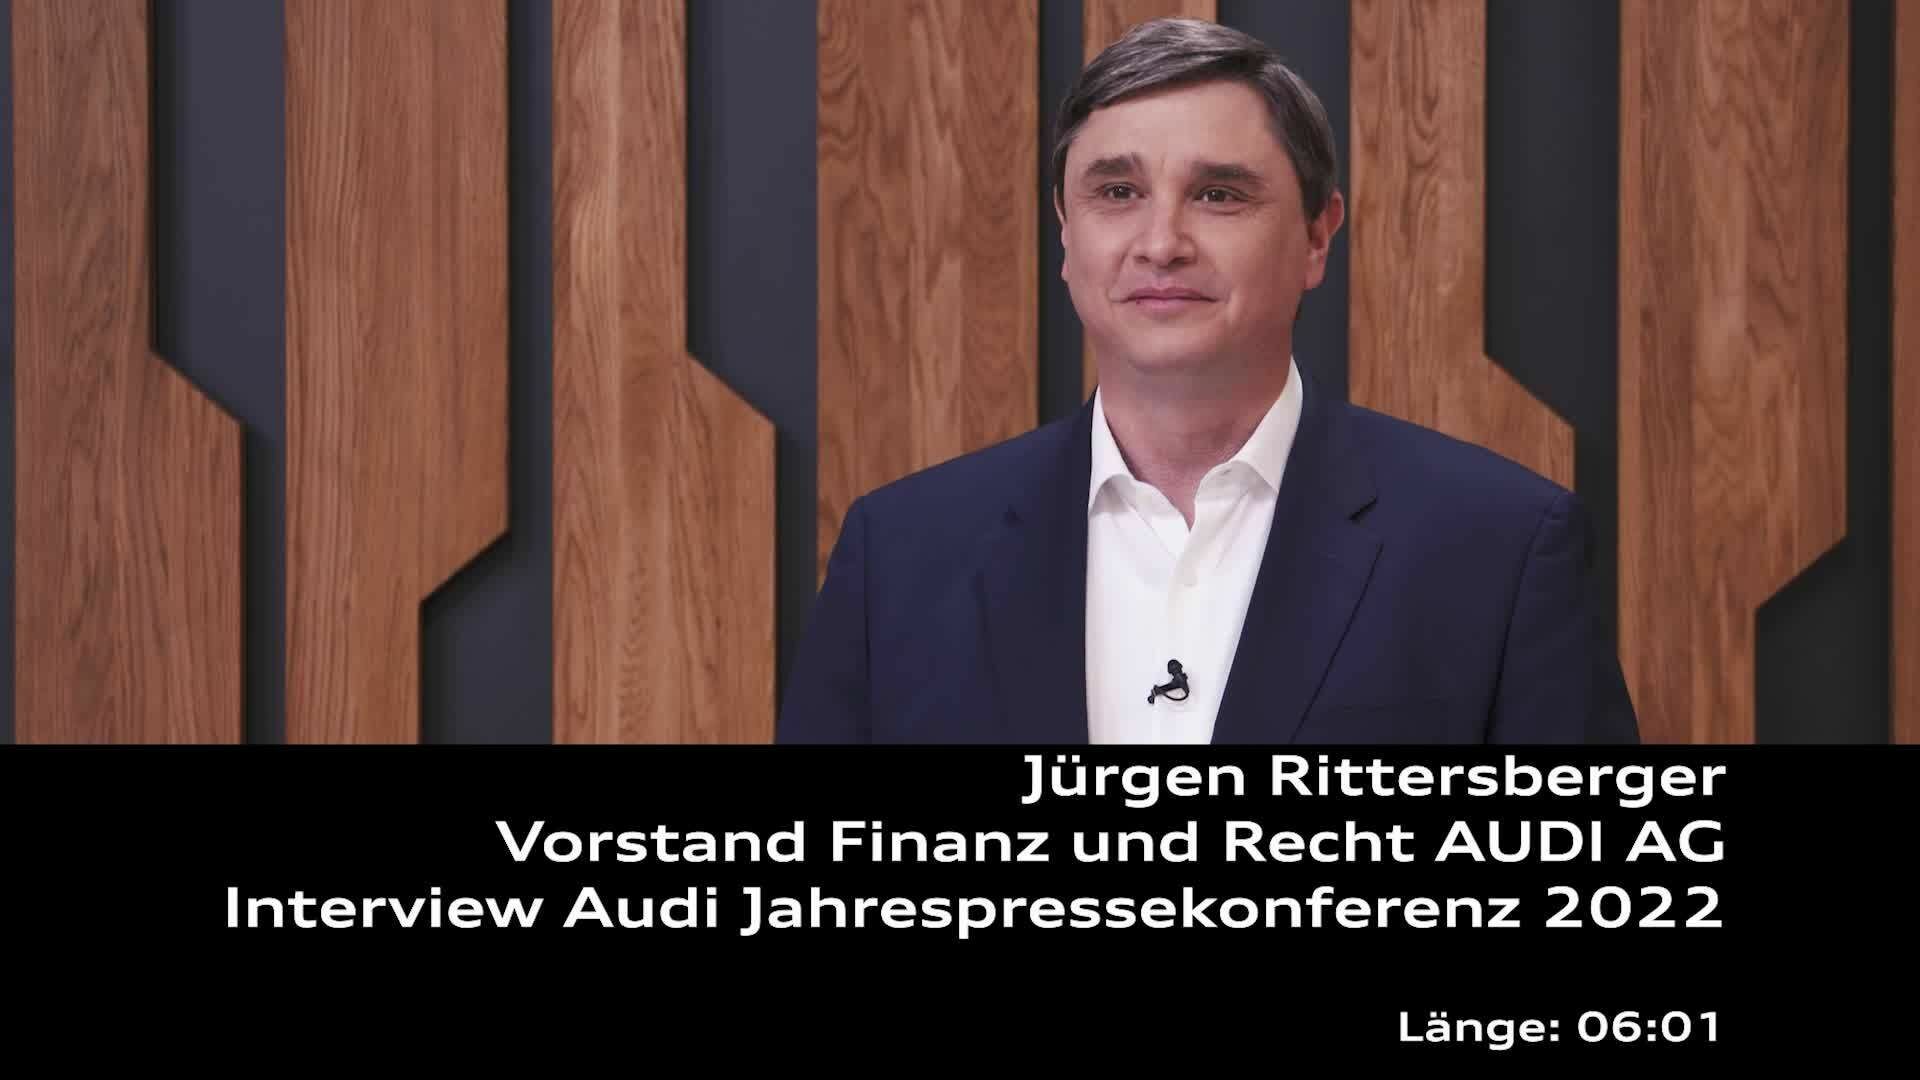 Interview mit Jürgen Rittersberger im Rahmen der Audi Jahrespressekonferenz 2022